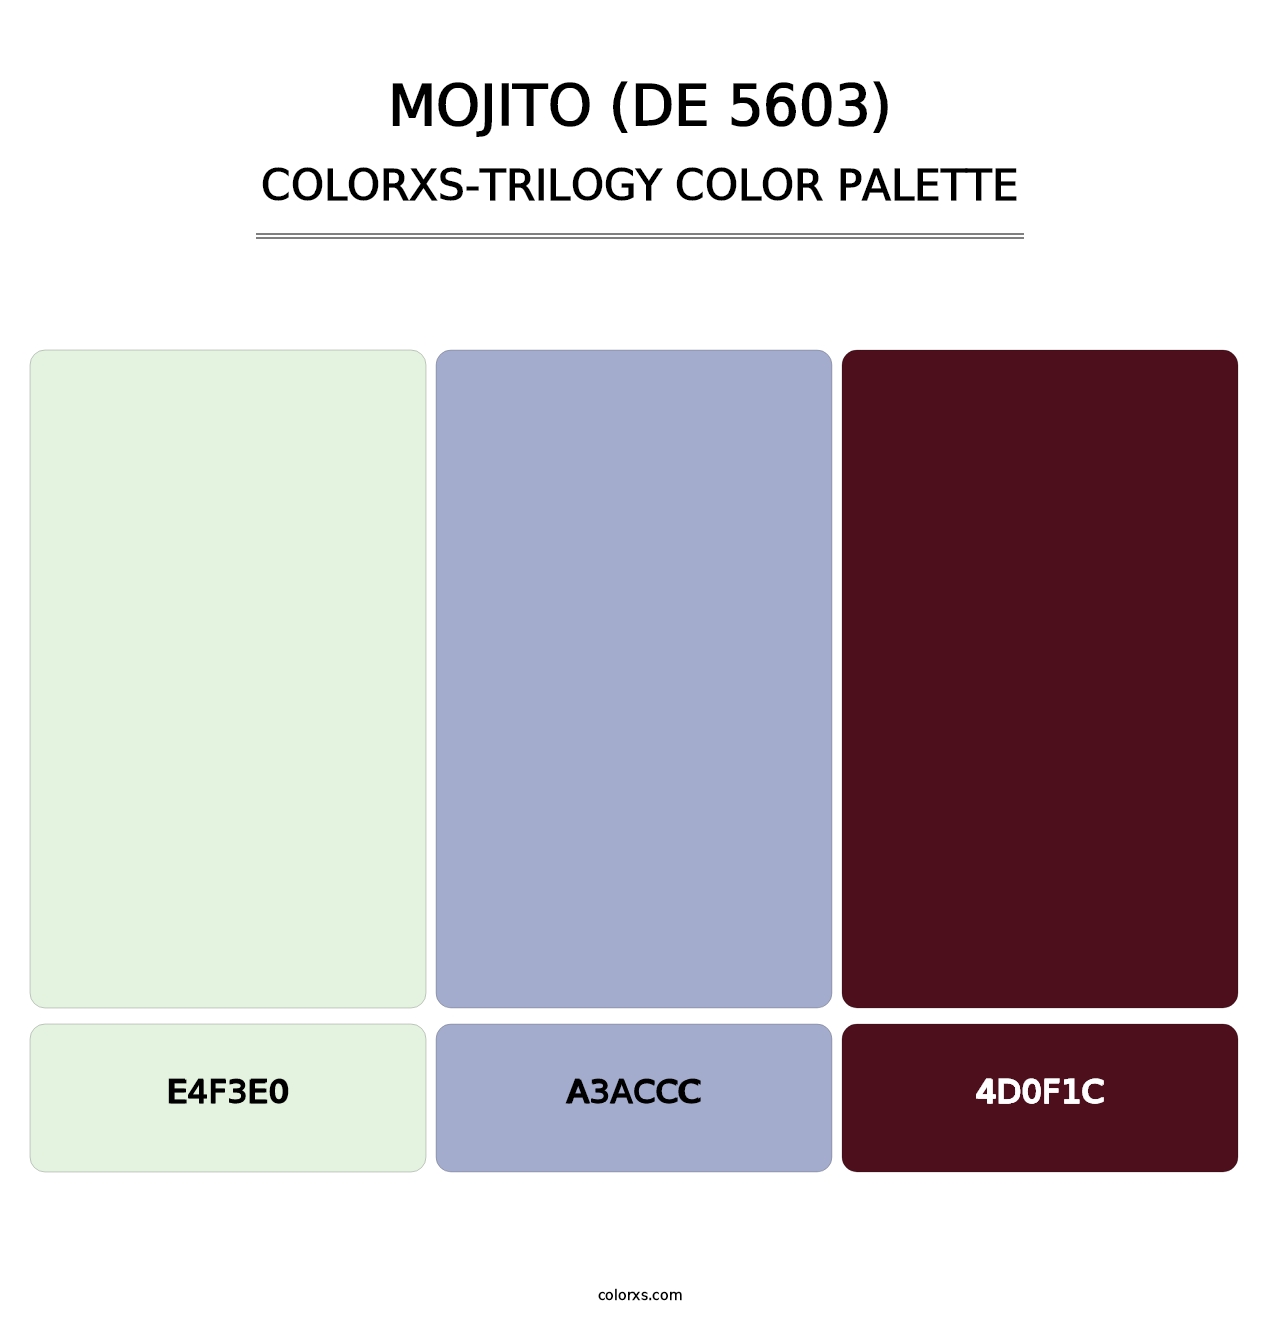 Mojito (DE 5603) - Colorxs Trilogy Palette